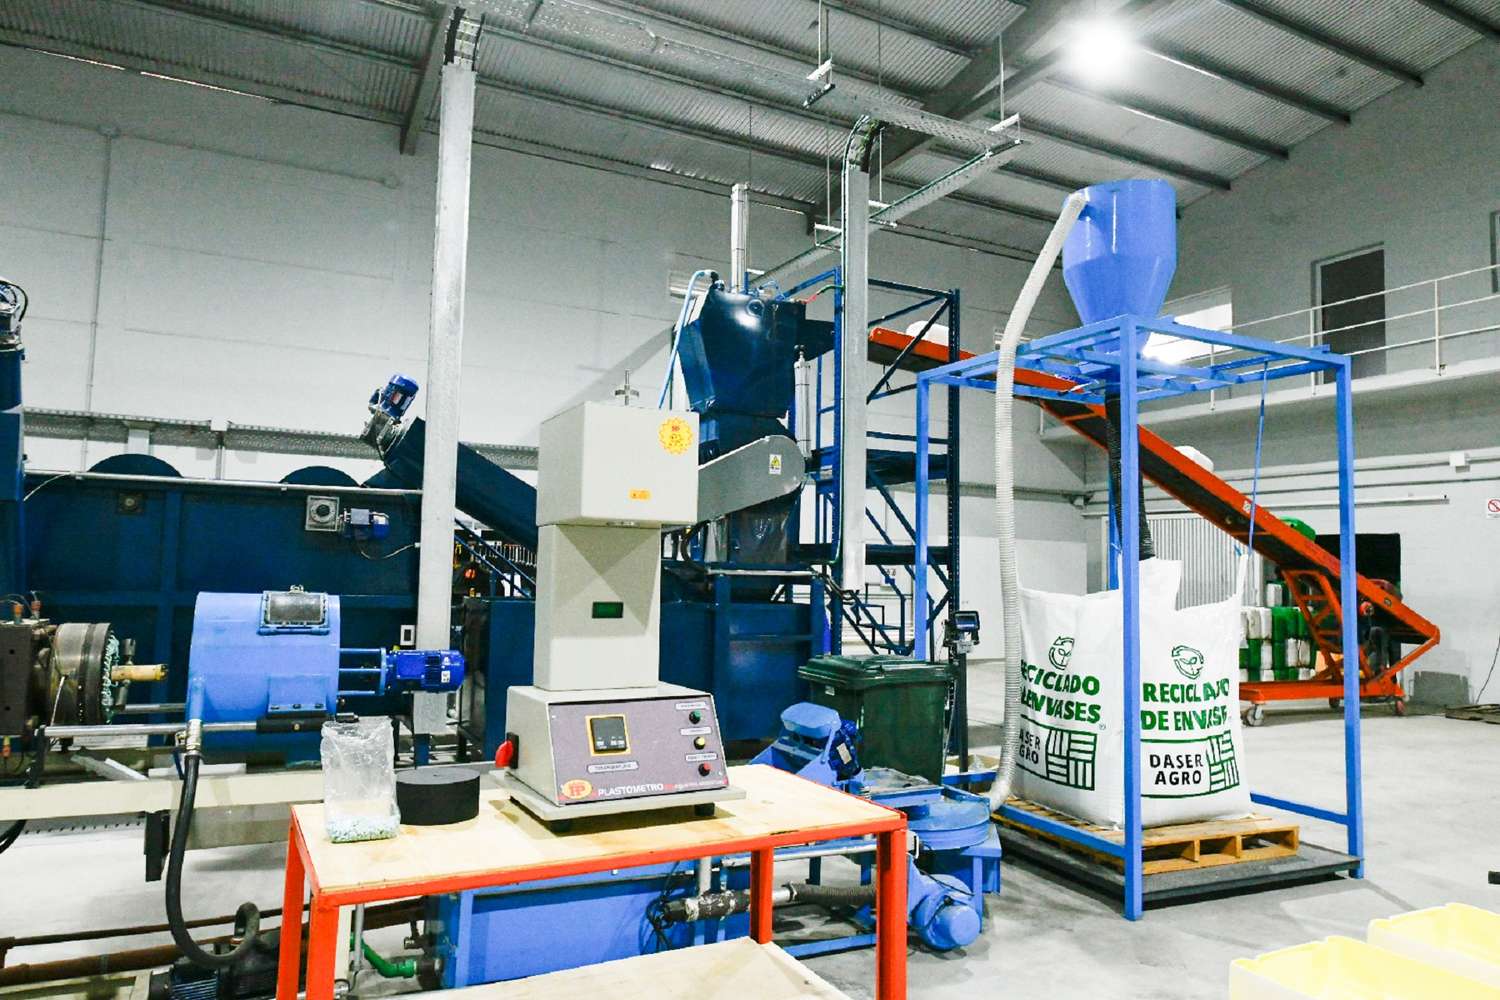 Daser Agro inauguró la primera planta de reciclado de envases vacíos de fitosanitarios